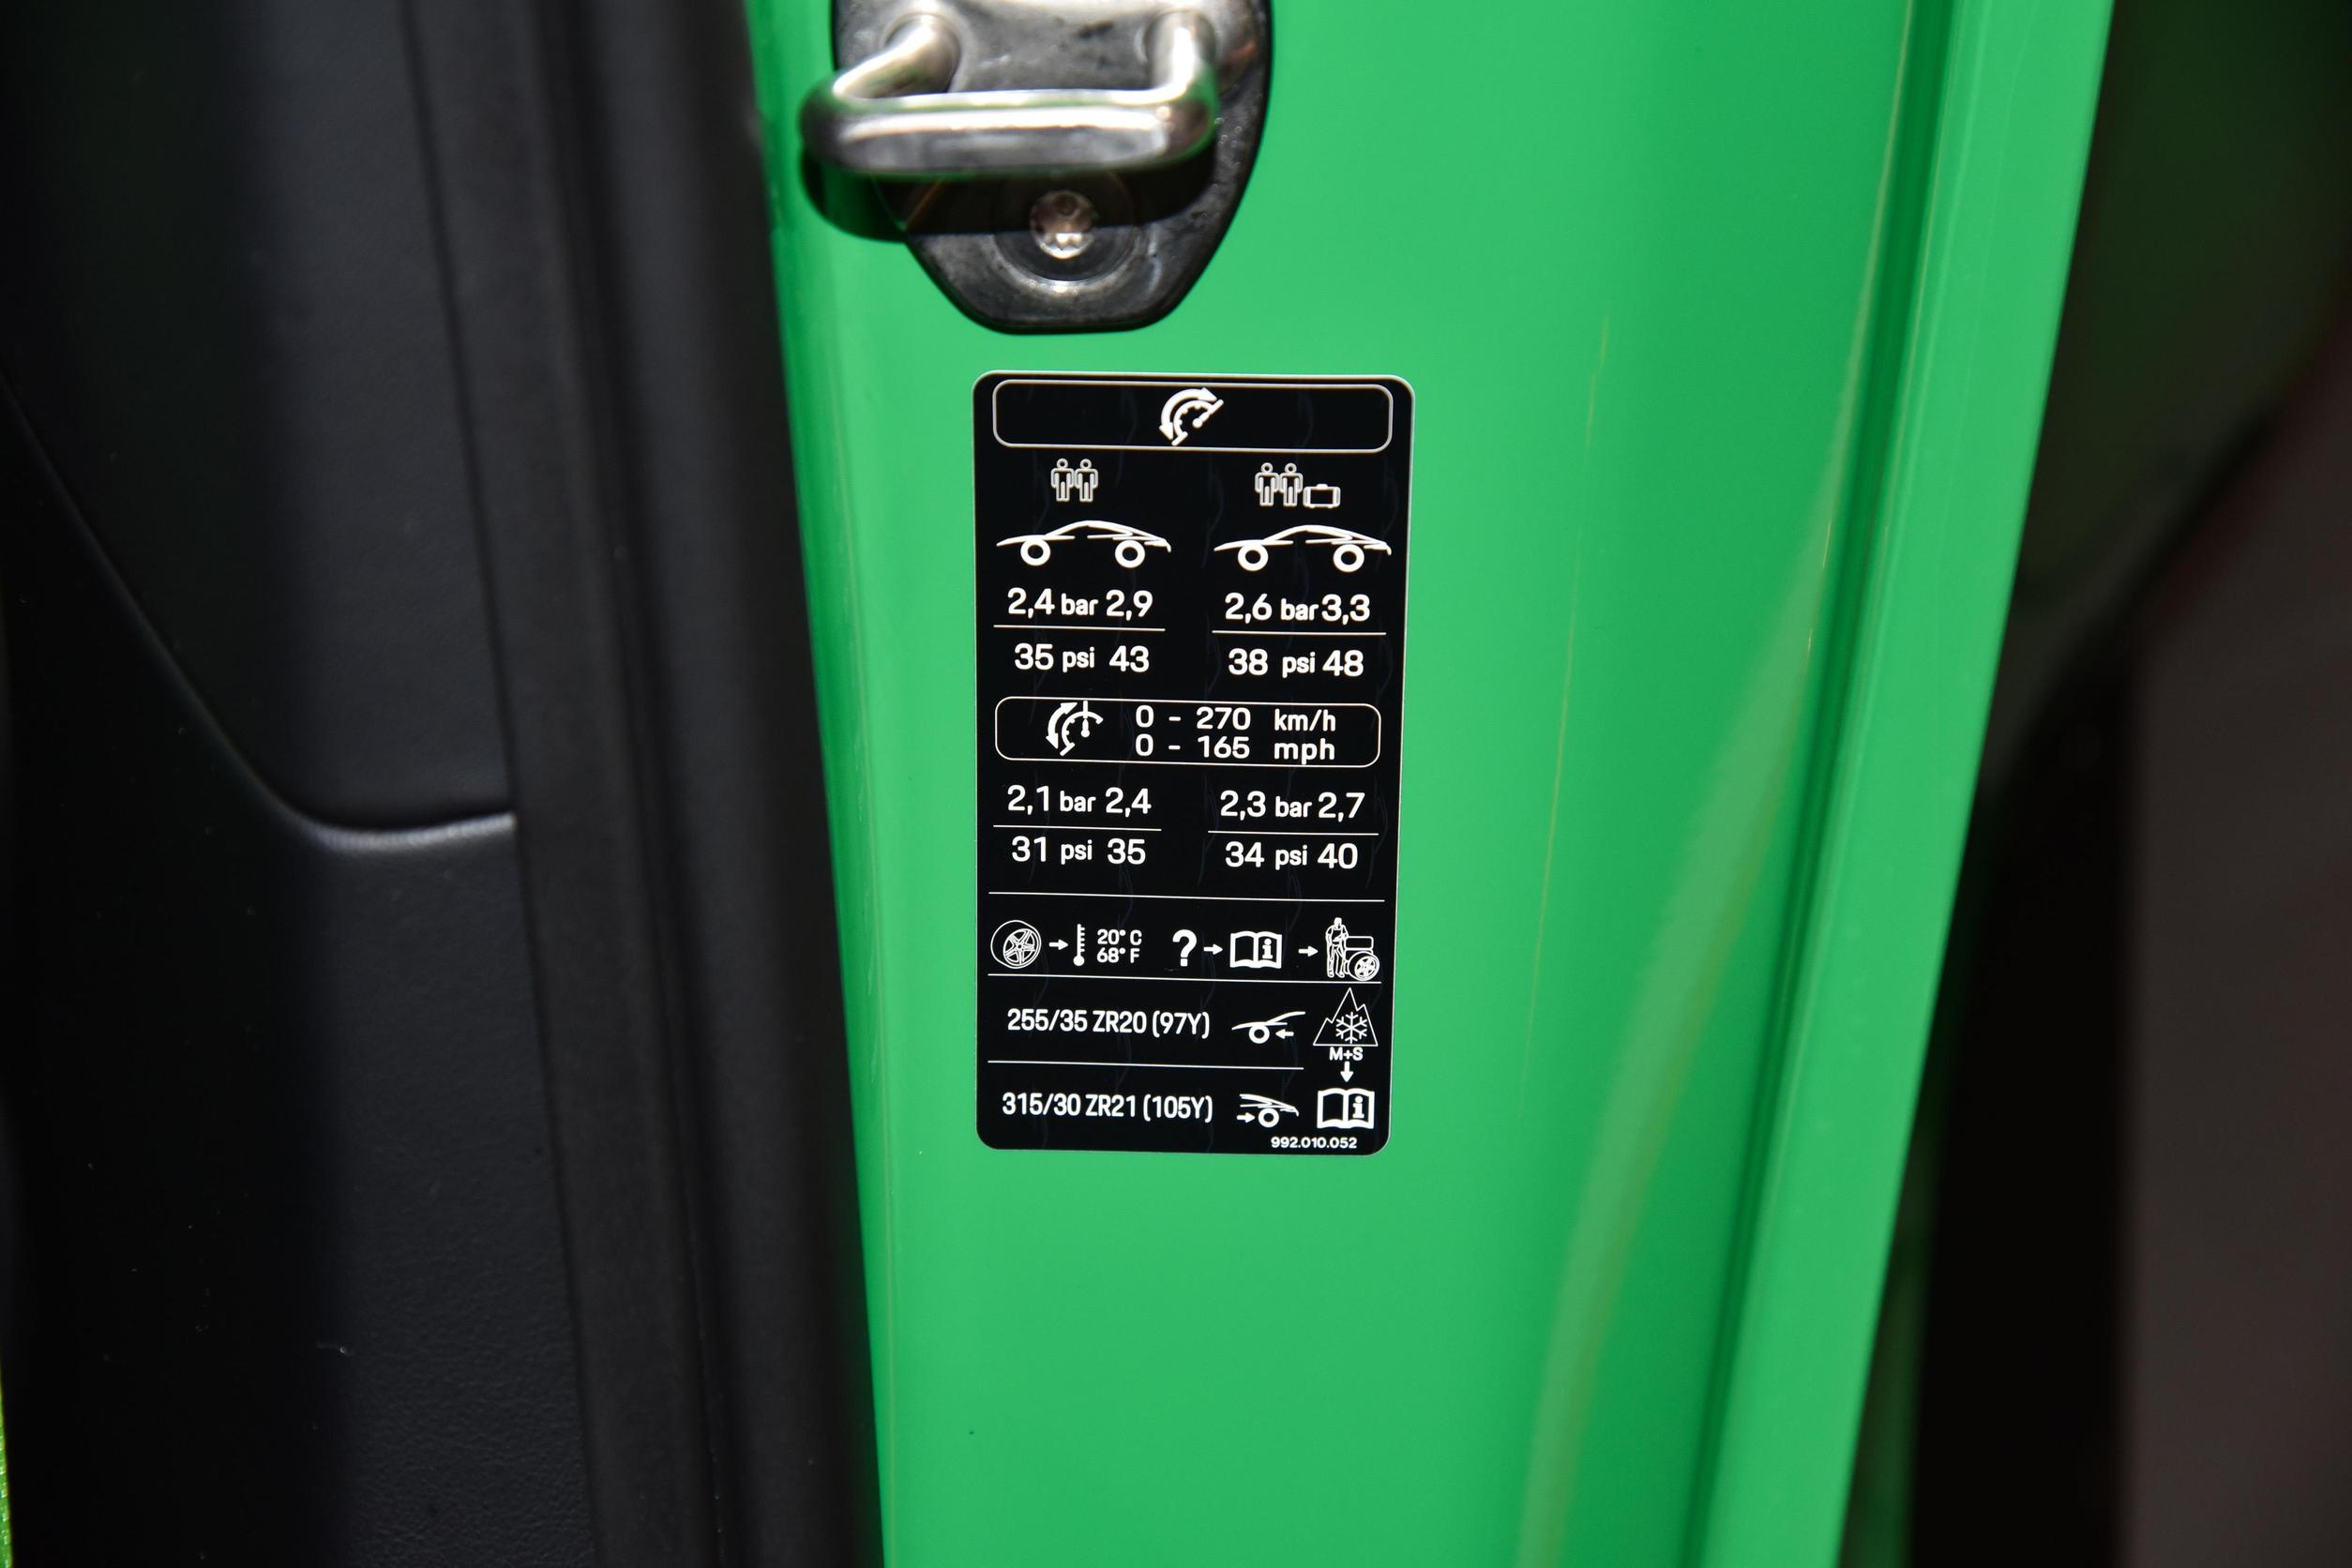 游戏壁纸下载,2013款保时捷918 Spyder豪华跑车桌面壁纸_叶子猪网游下载站